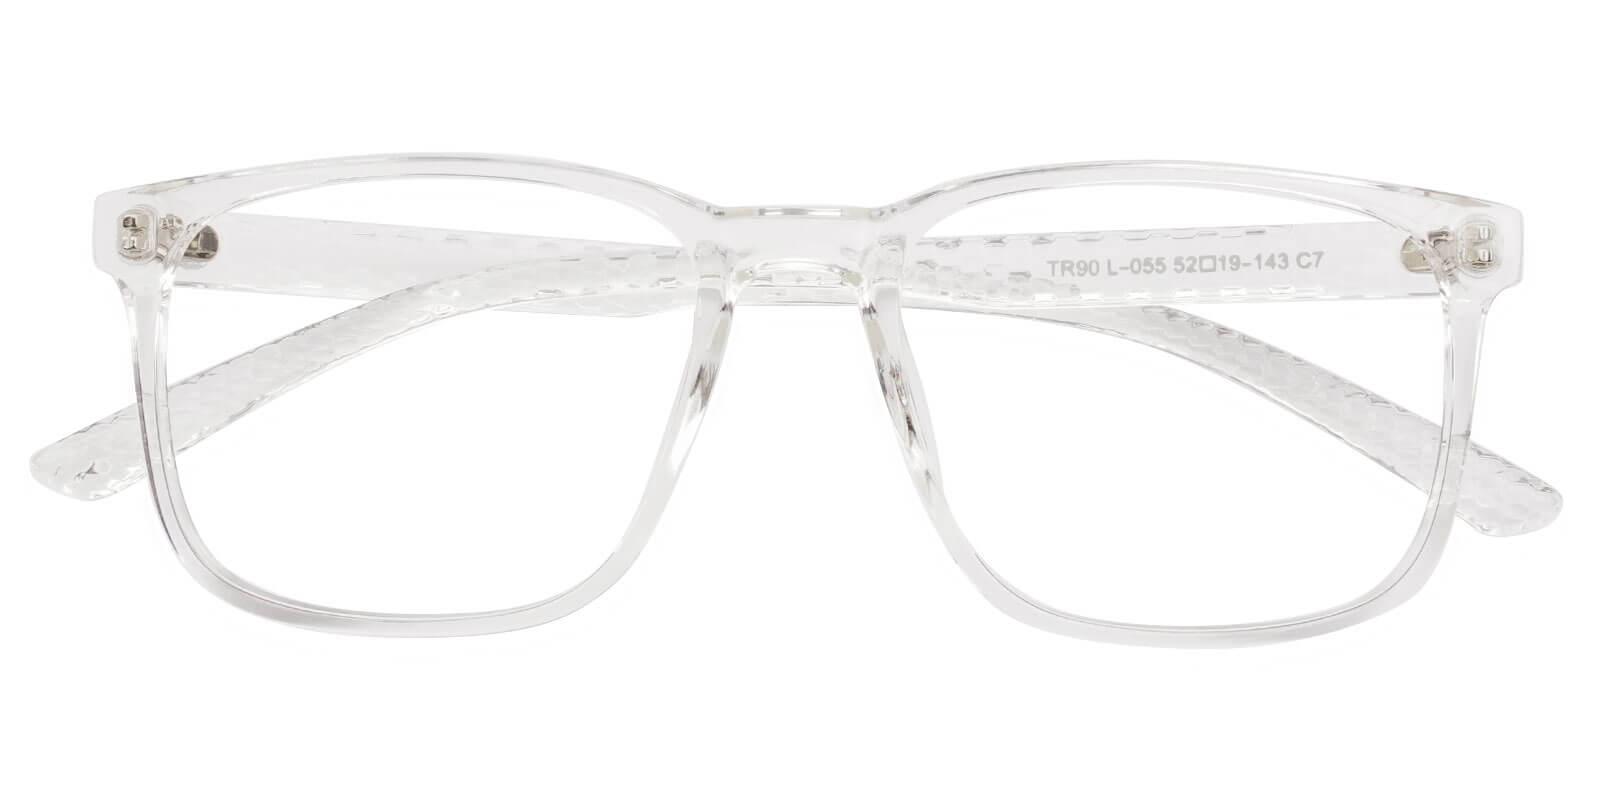 Warren Translucent TR UniversalBridgeFit , Eyeglasses Frames from ABBE Glasses